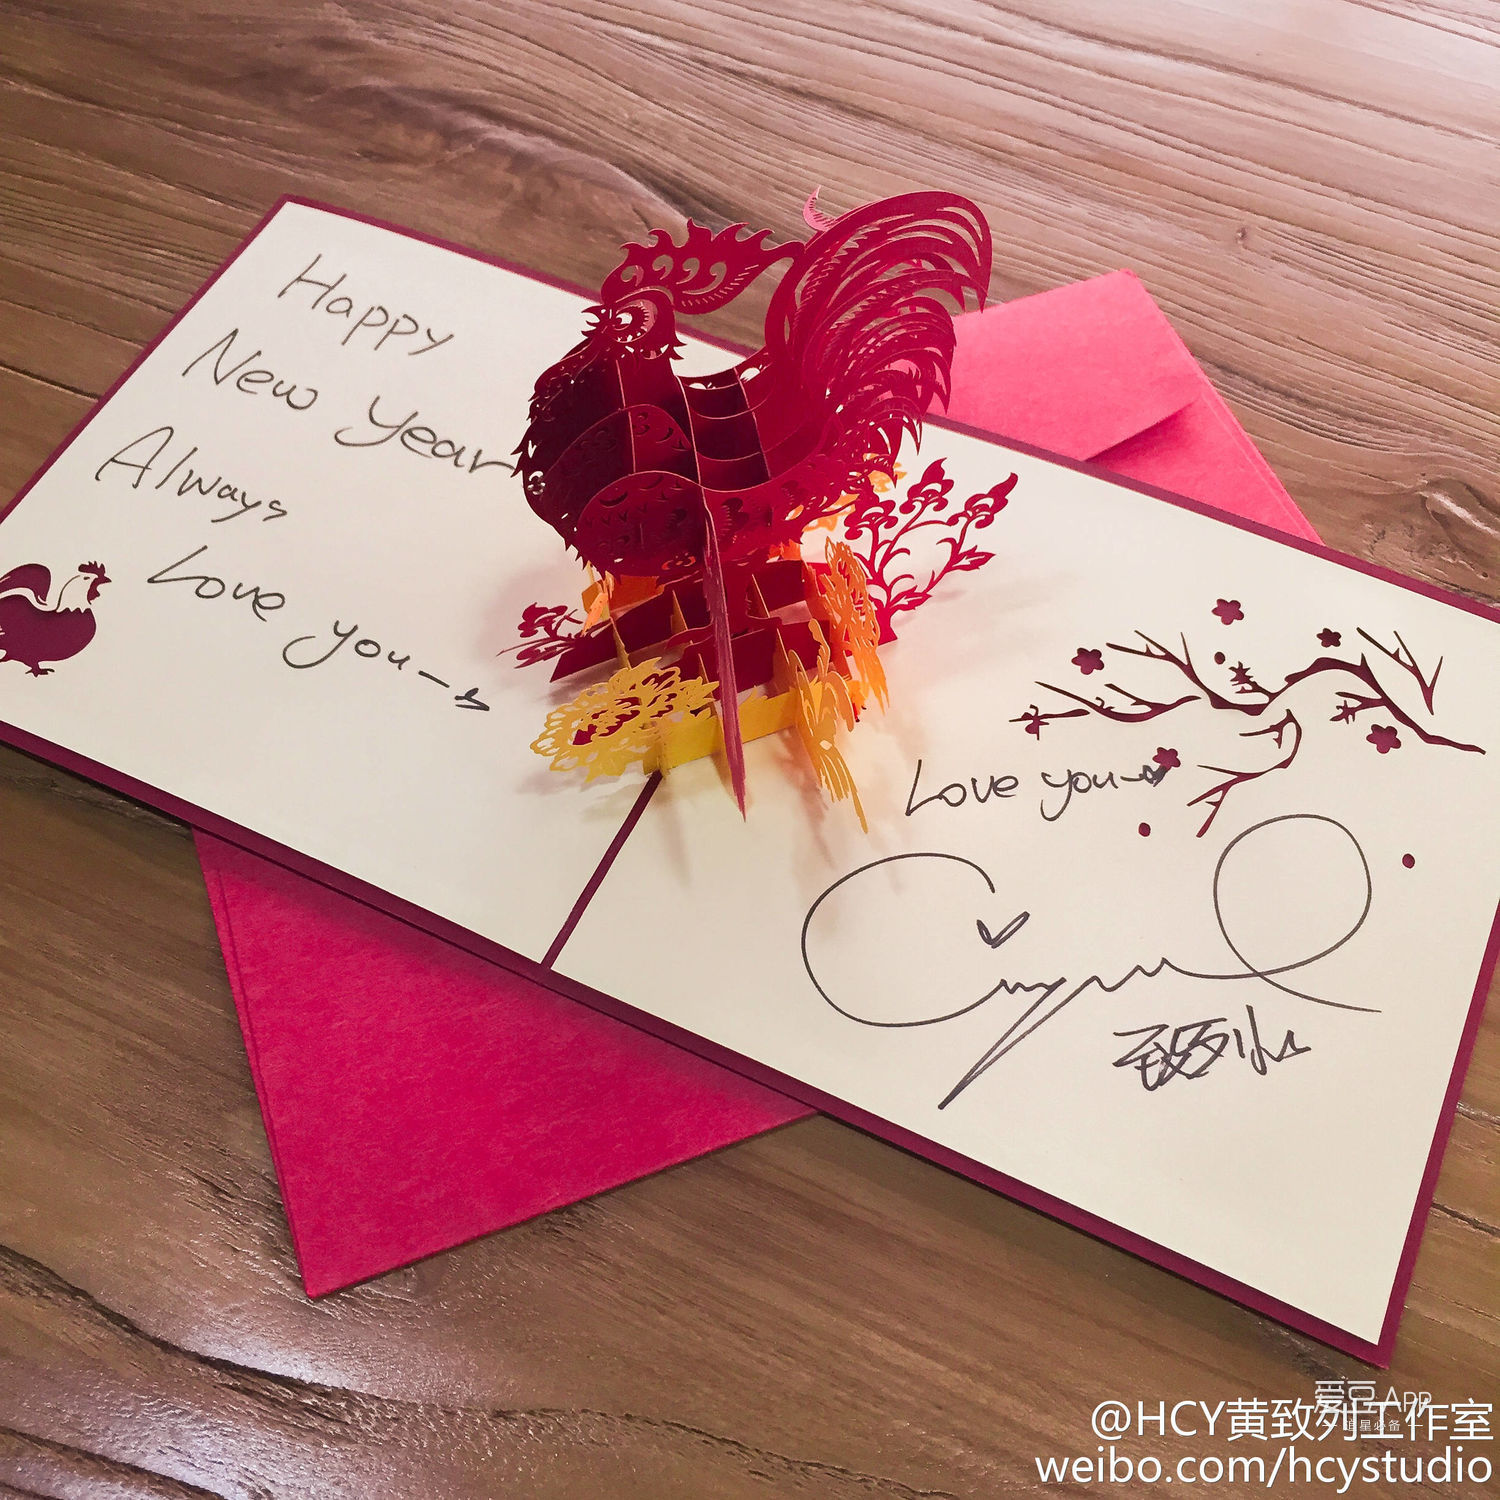 歌手大人在贺卡上写了"happynew year always love you"以及用韩文写